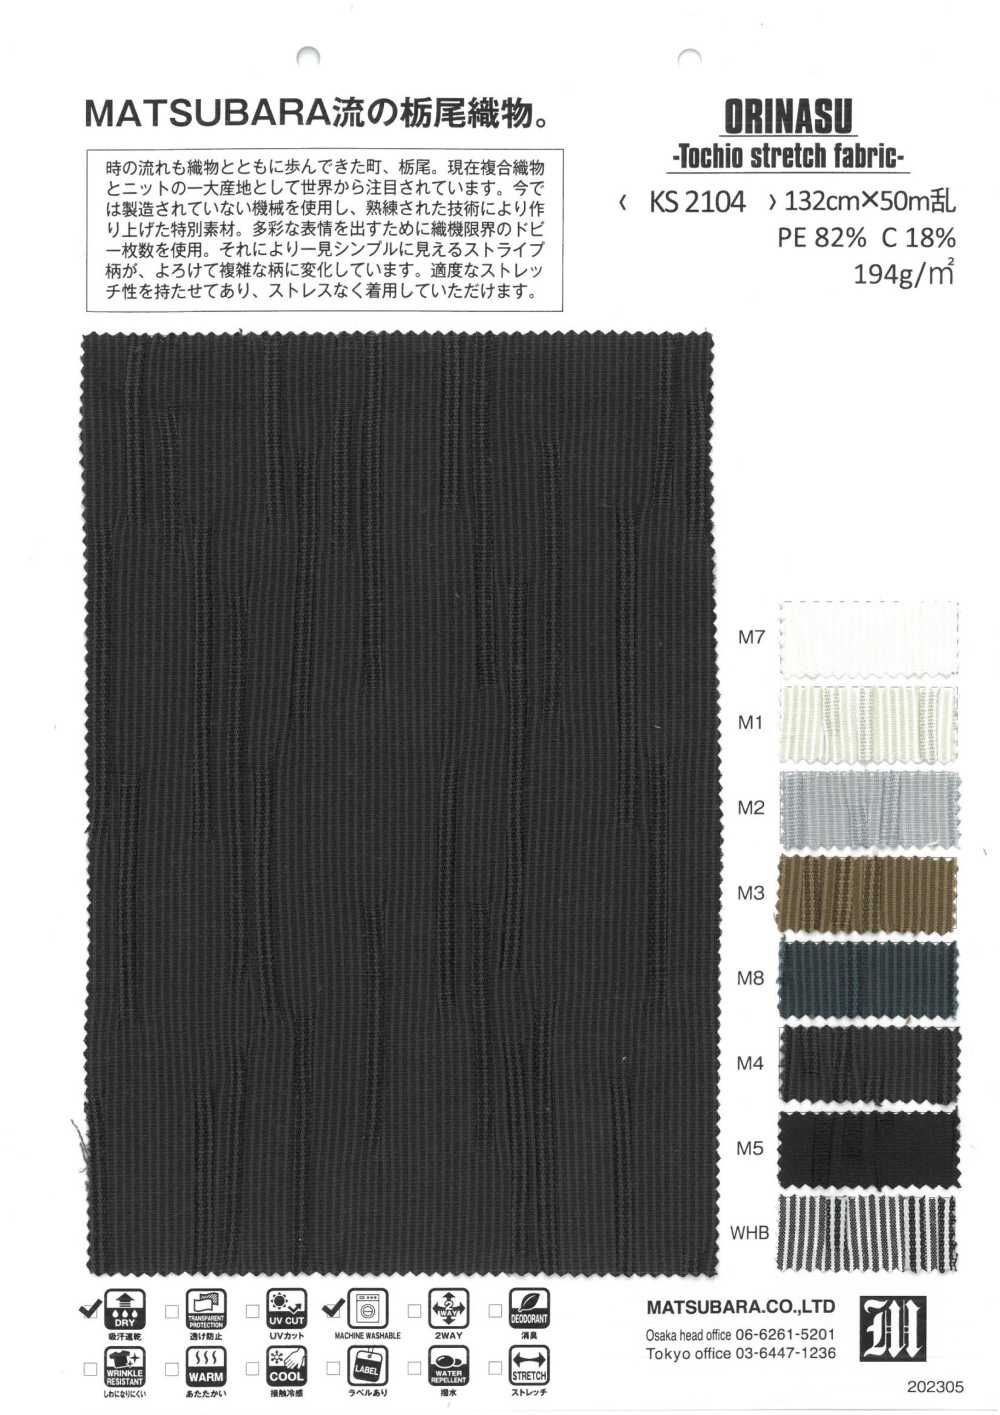 KS2104 ORINASU -Tejido Stretch Tochio-[Fabrica Textil] Matsubara